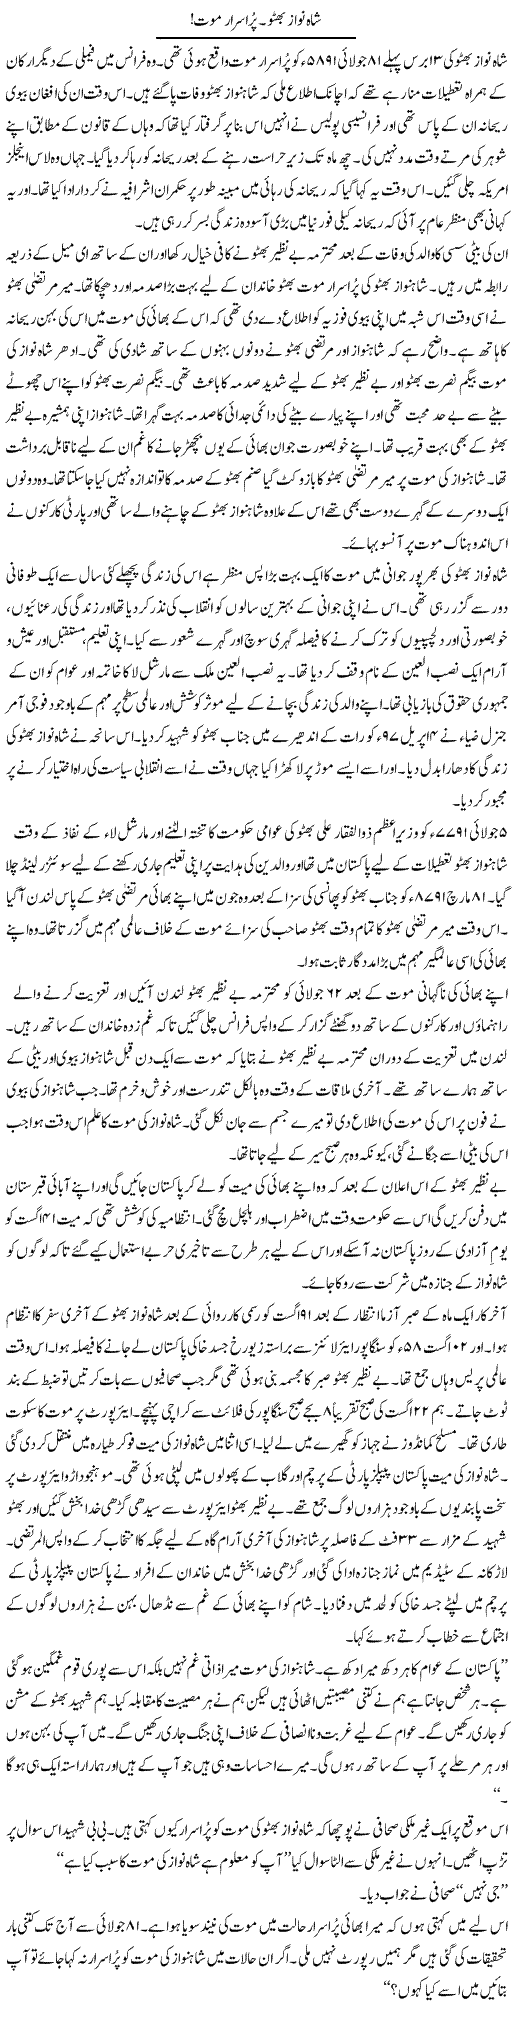 Shah Nawaz Bhutto, Pur Asraar Mout | Bashir Riaz | Daily Urdu Columns